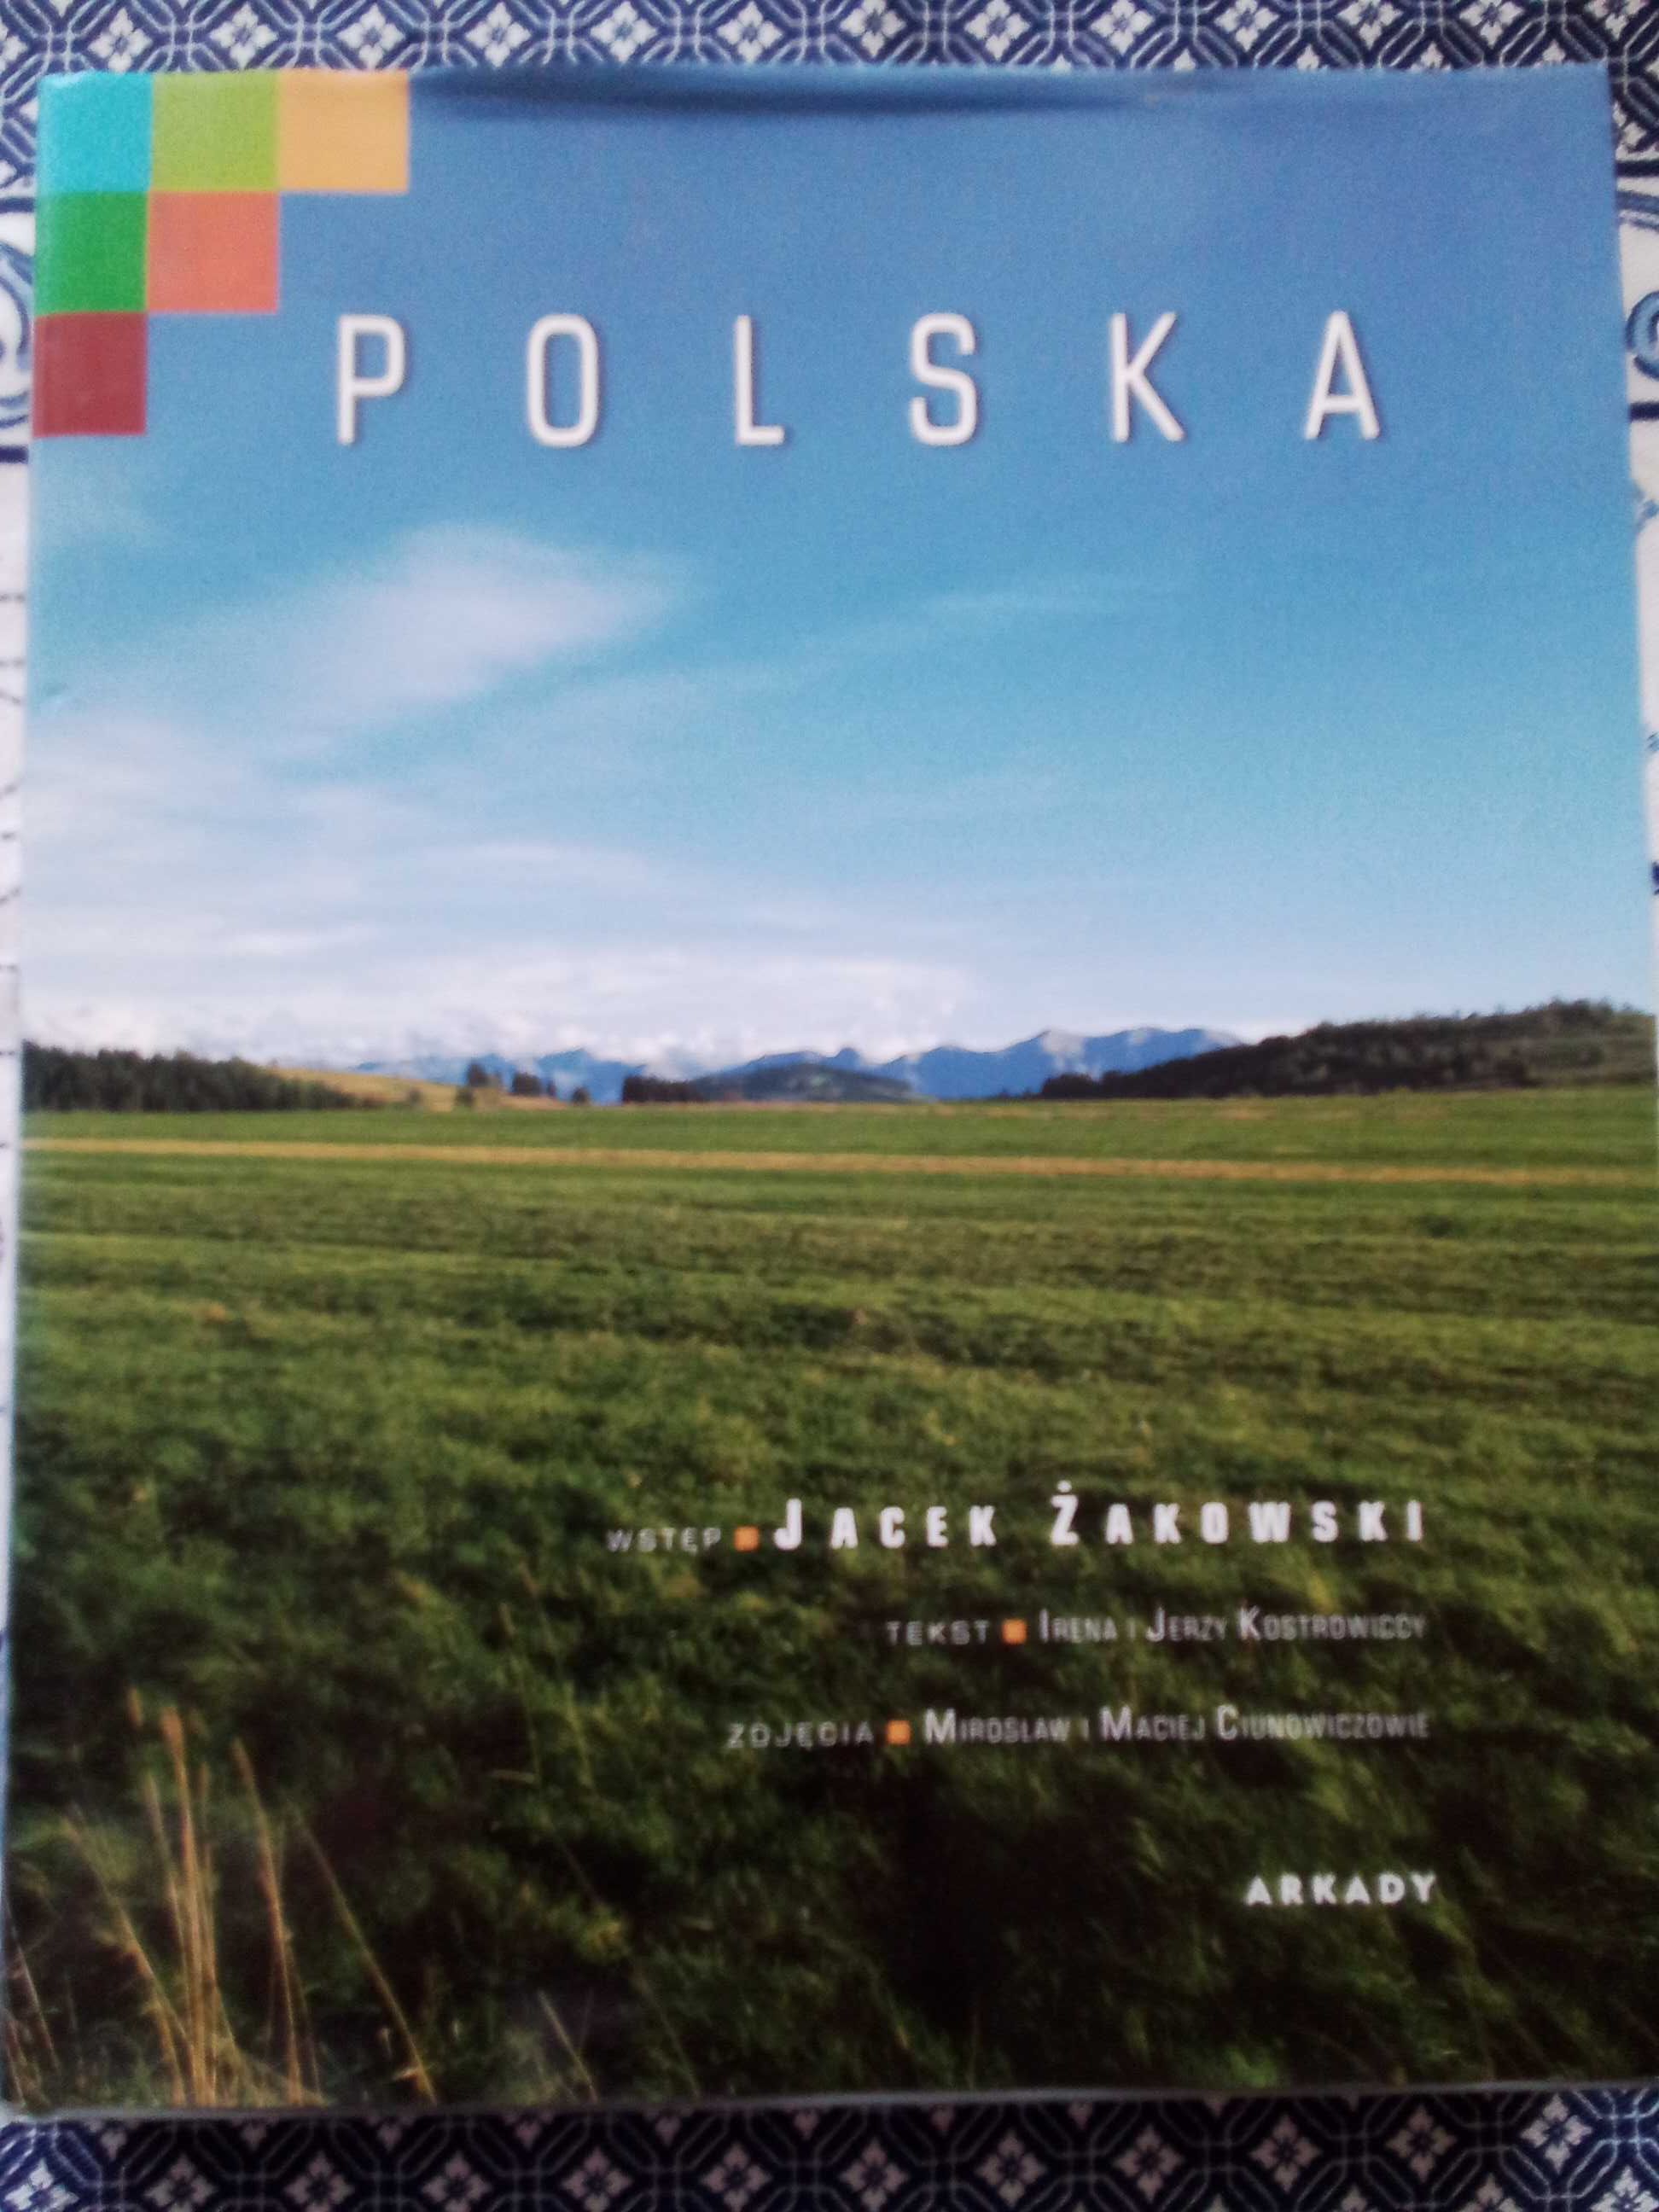 Polska album wstęp Jacek Żakowski